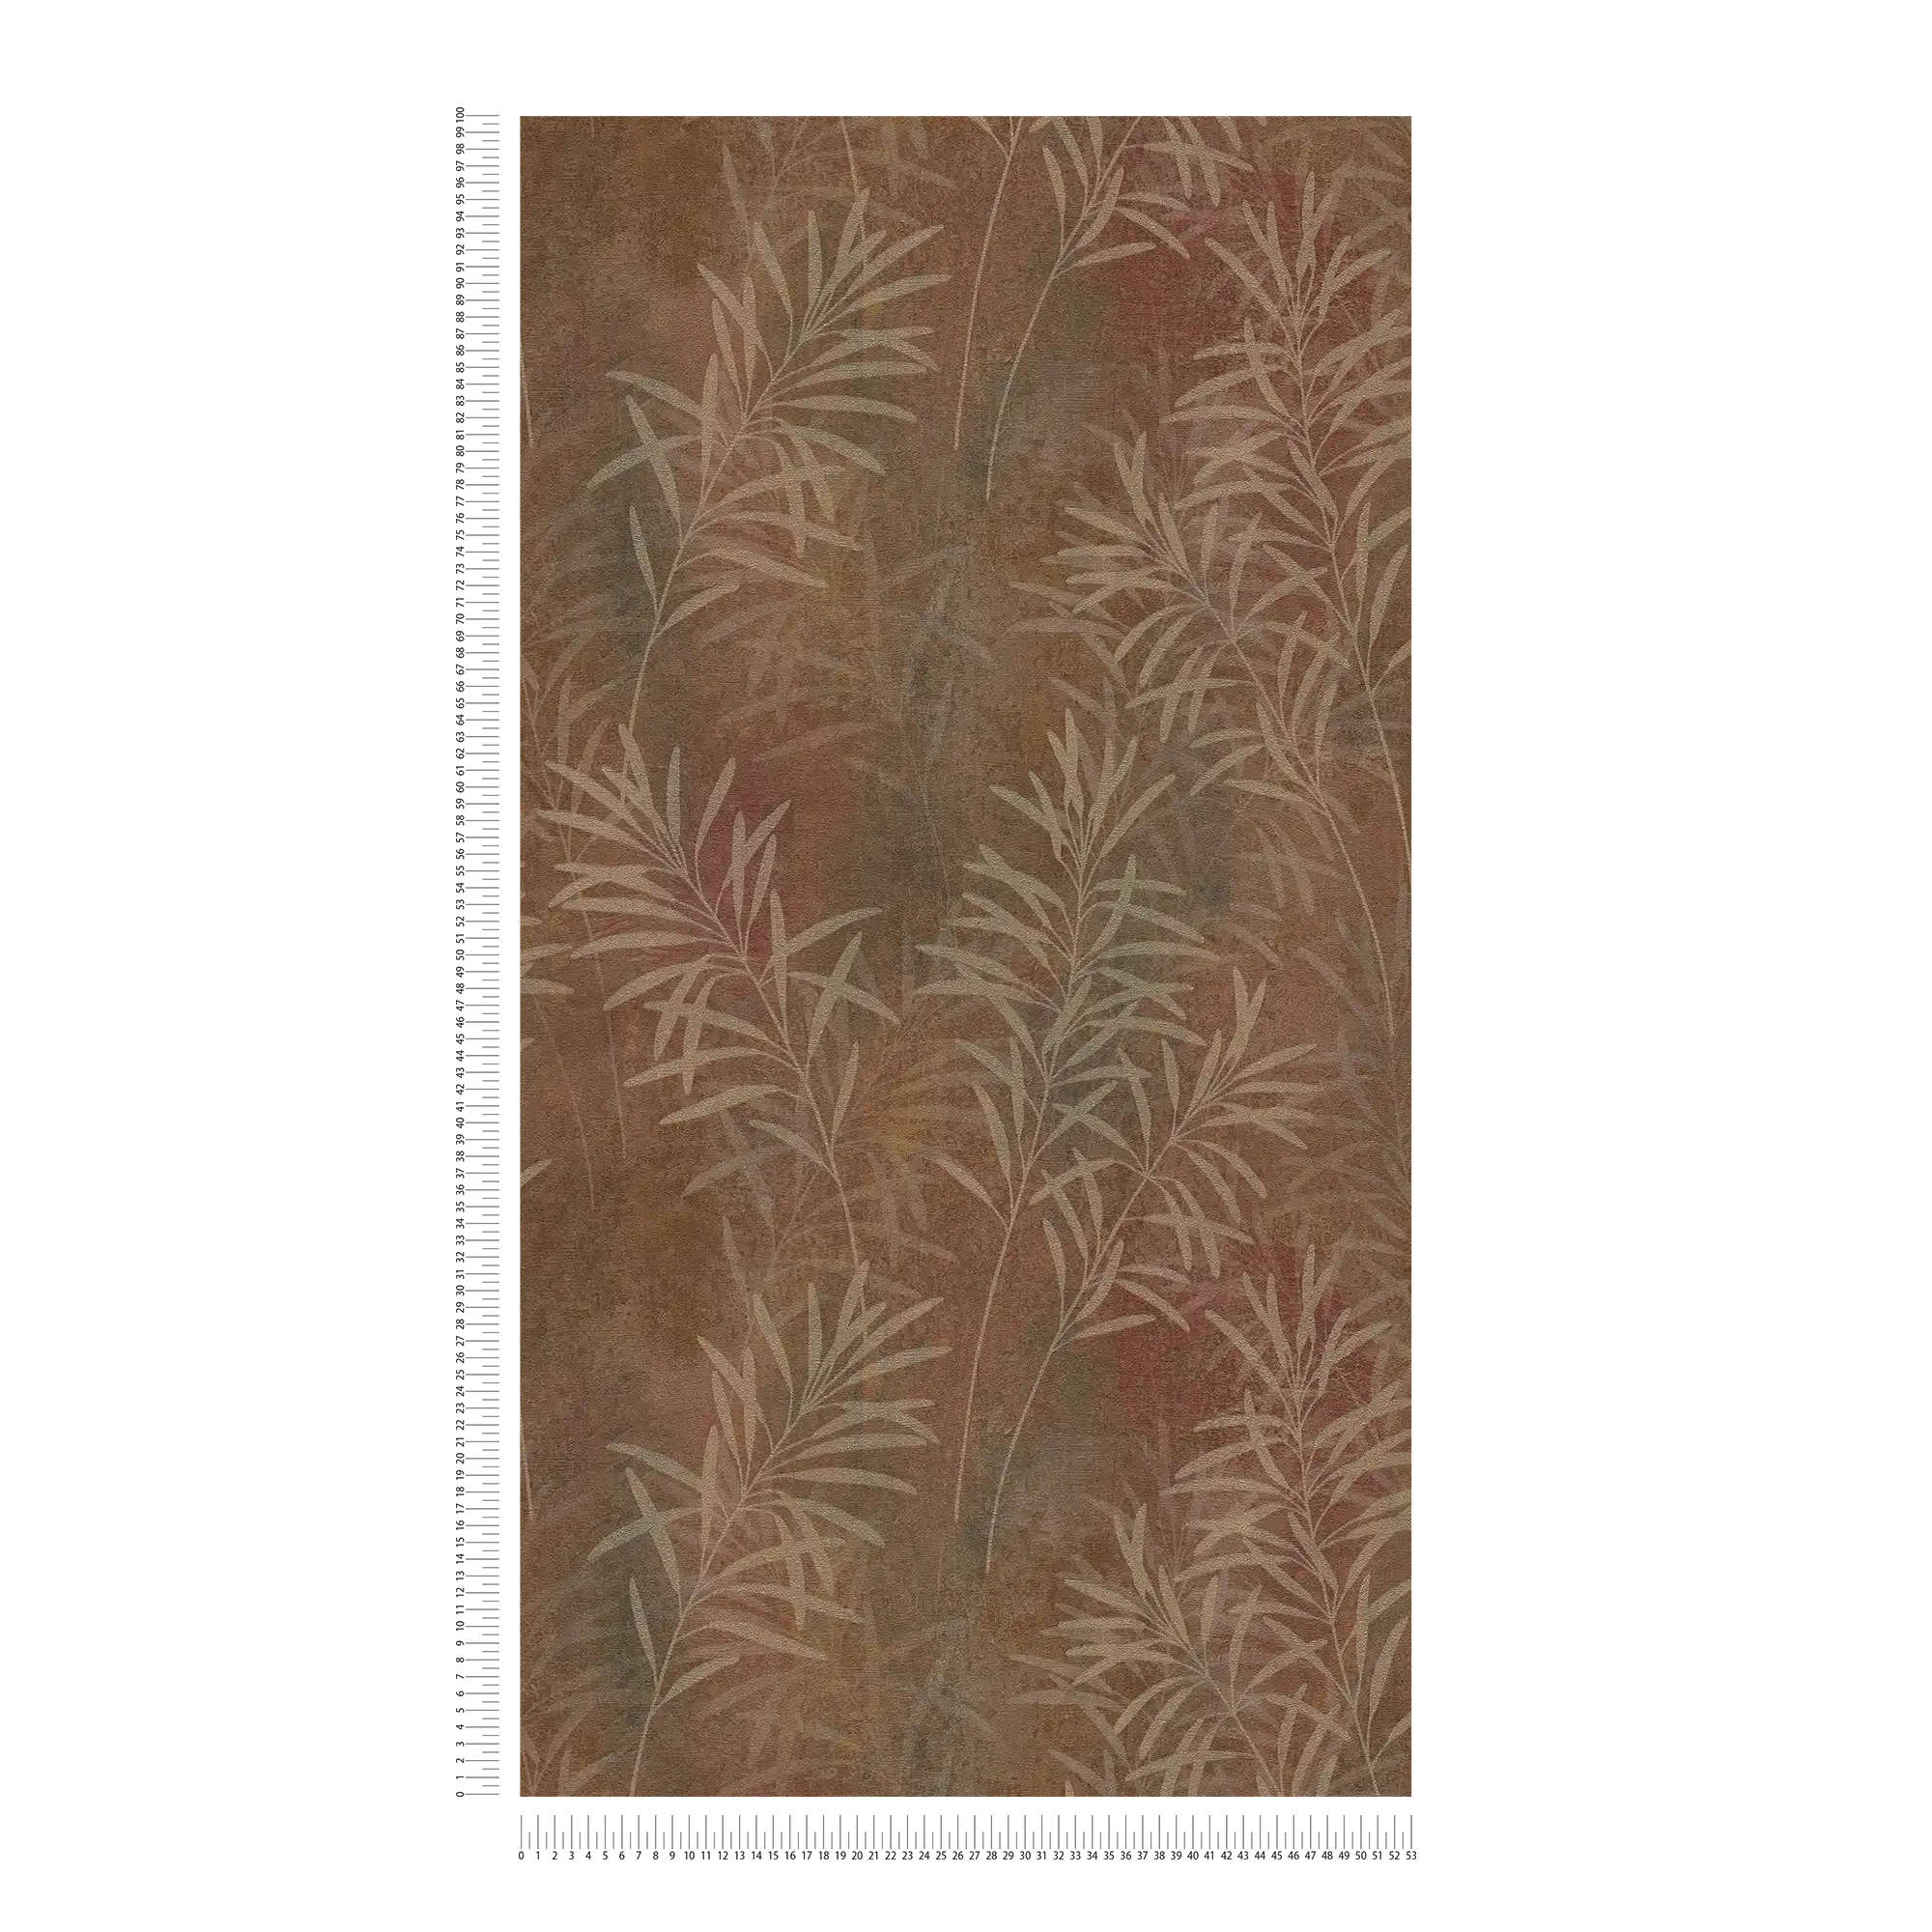             Papel pintado no tejido con motivos de hierba y estructura fina - marrón, beige, metálico
        